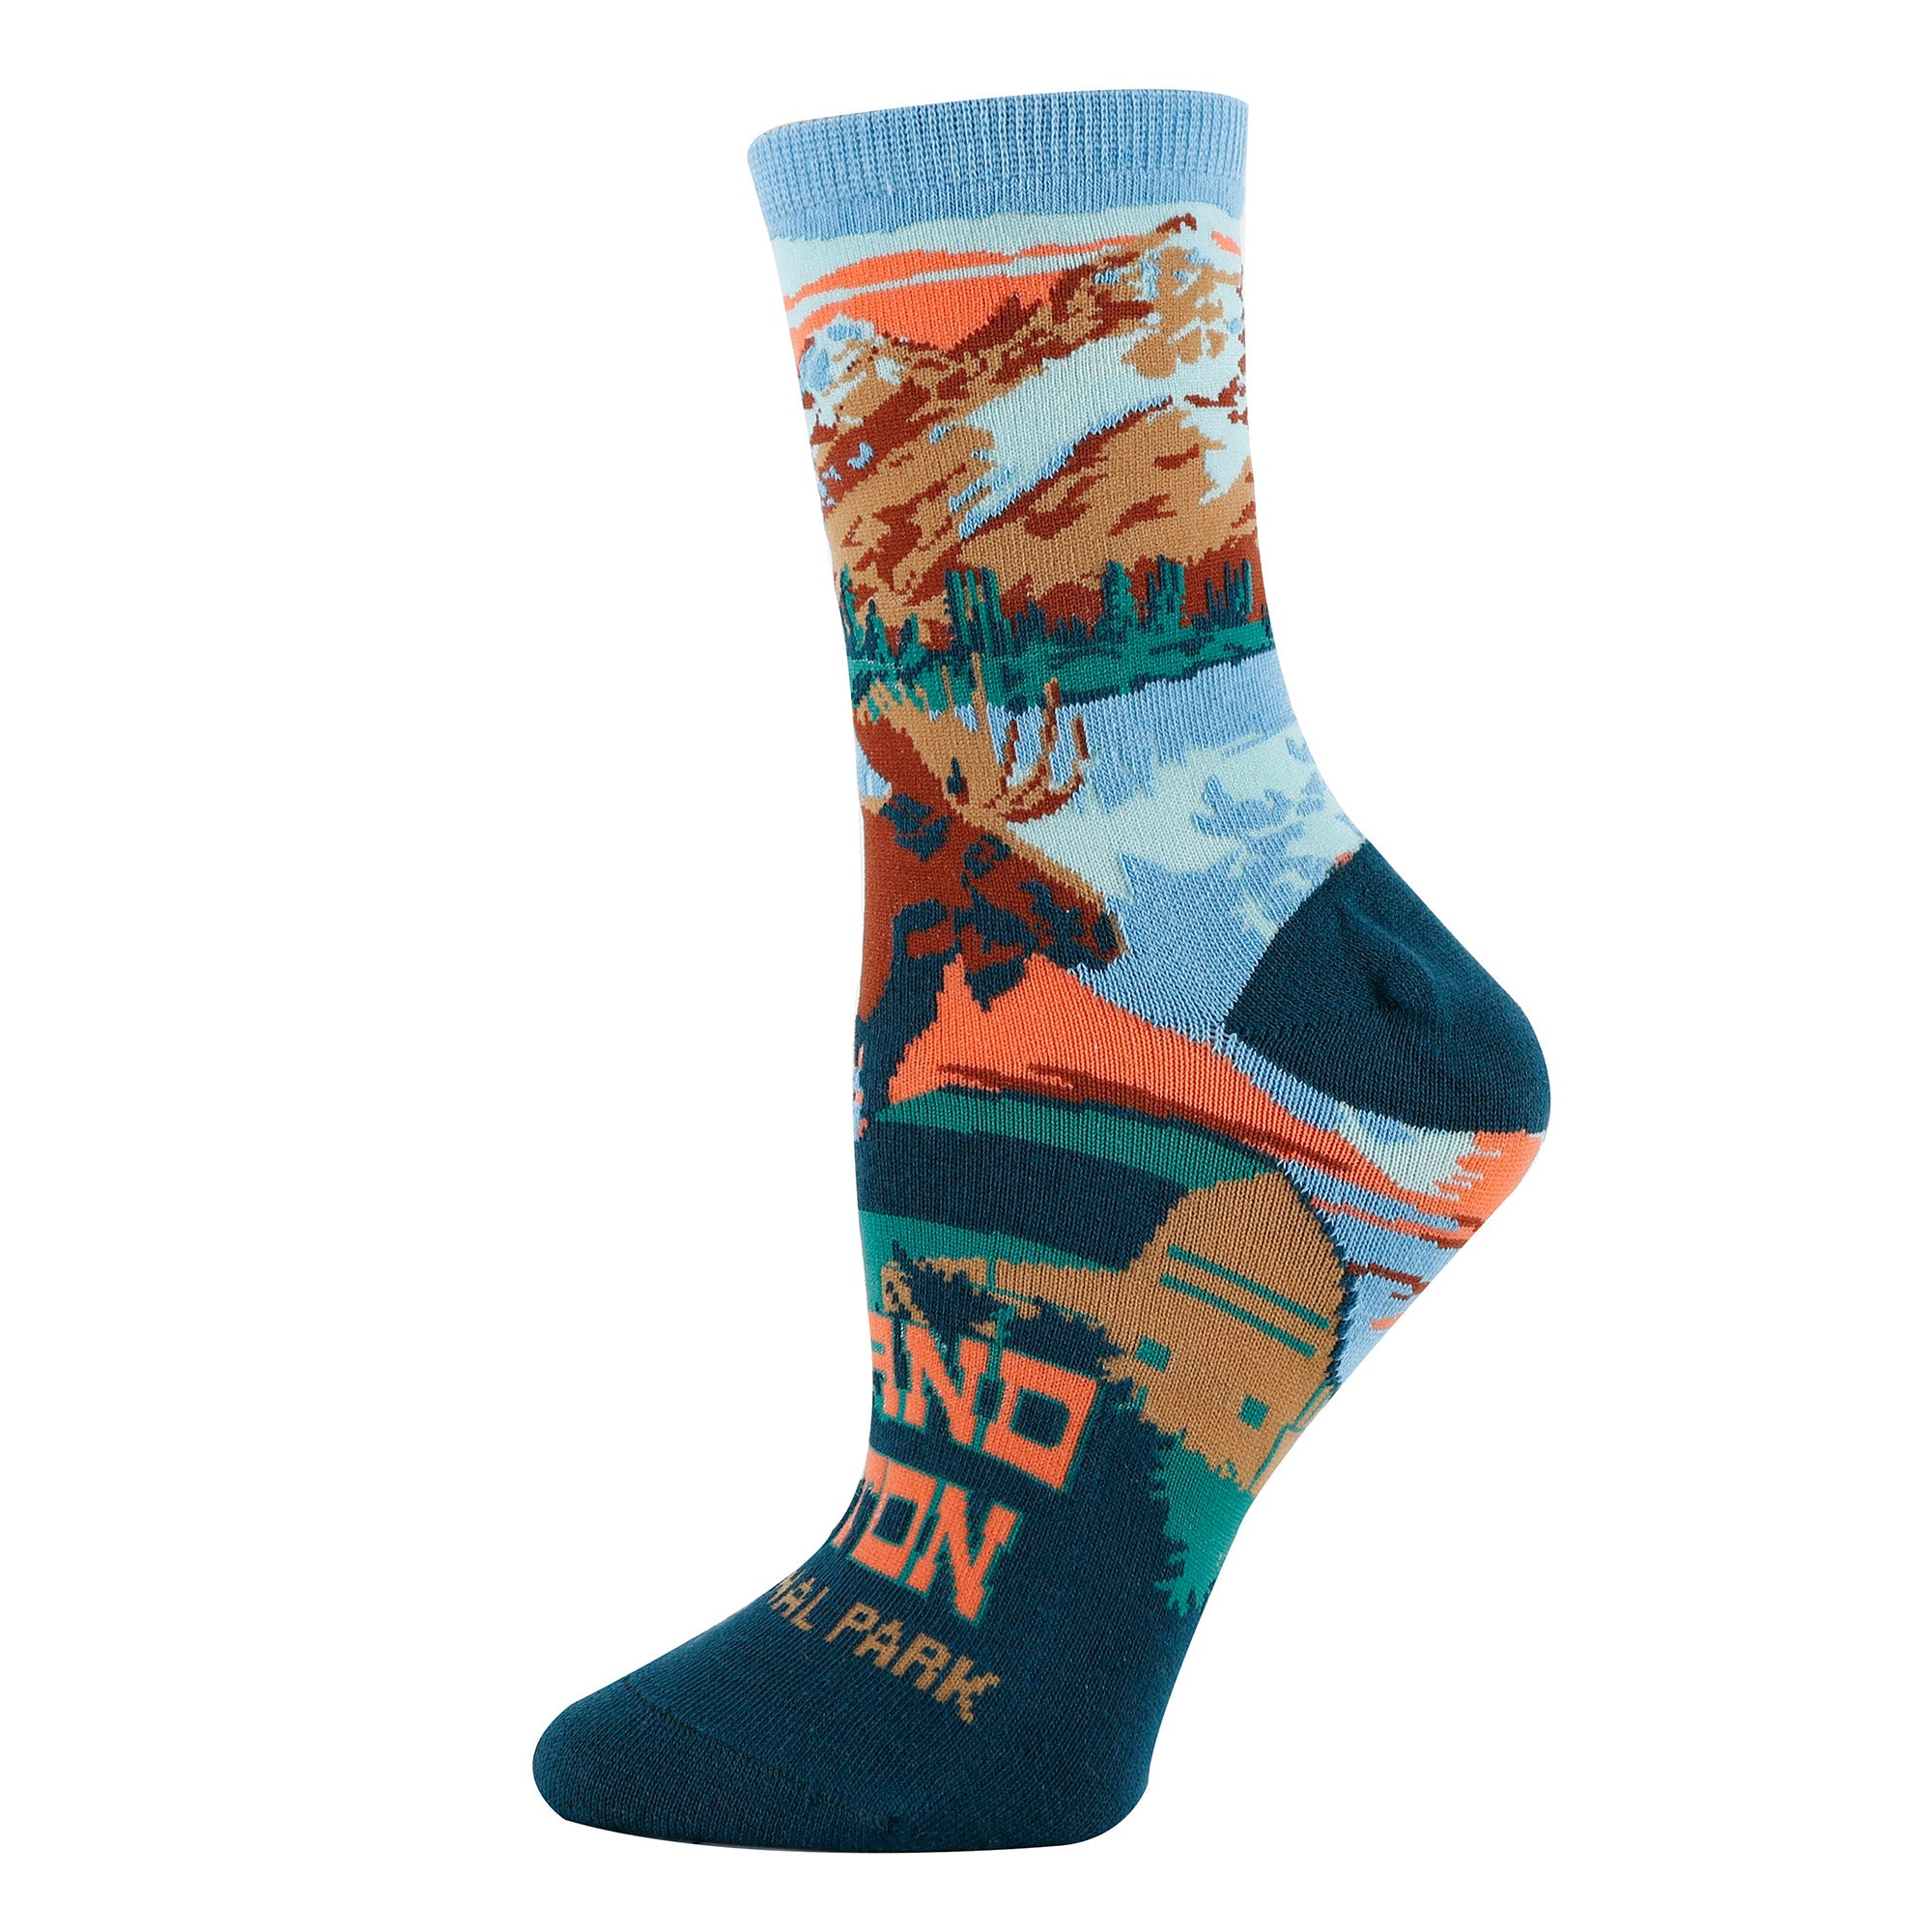 Grand Teton Socks